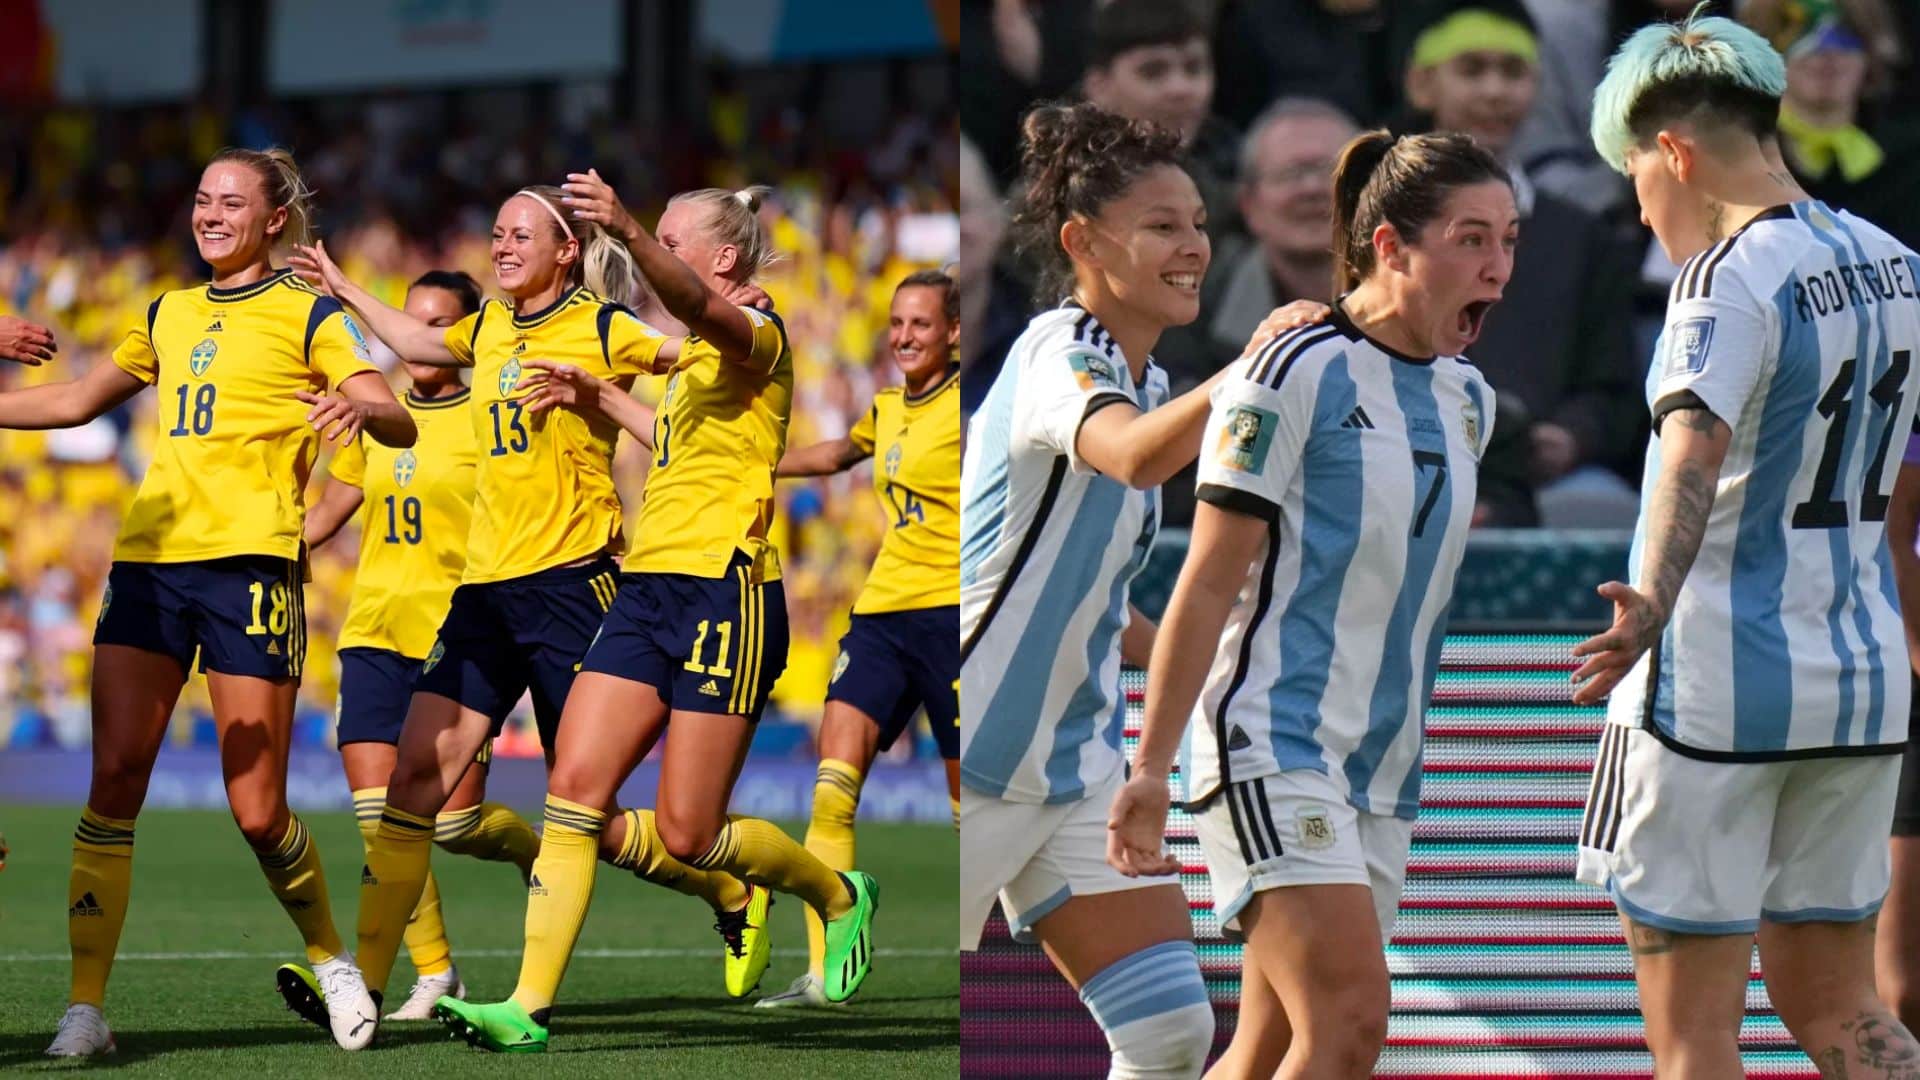 Suécia e Argentina se enfrentam pela terceira rodada da Copa do Mundo feminina (Foto: Naomi Baker/Getty Images)